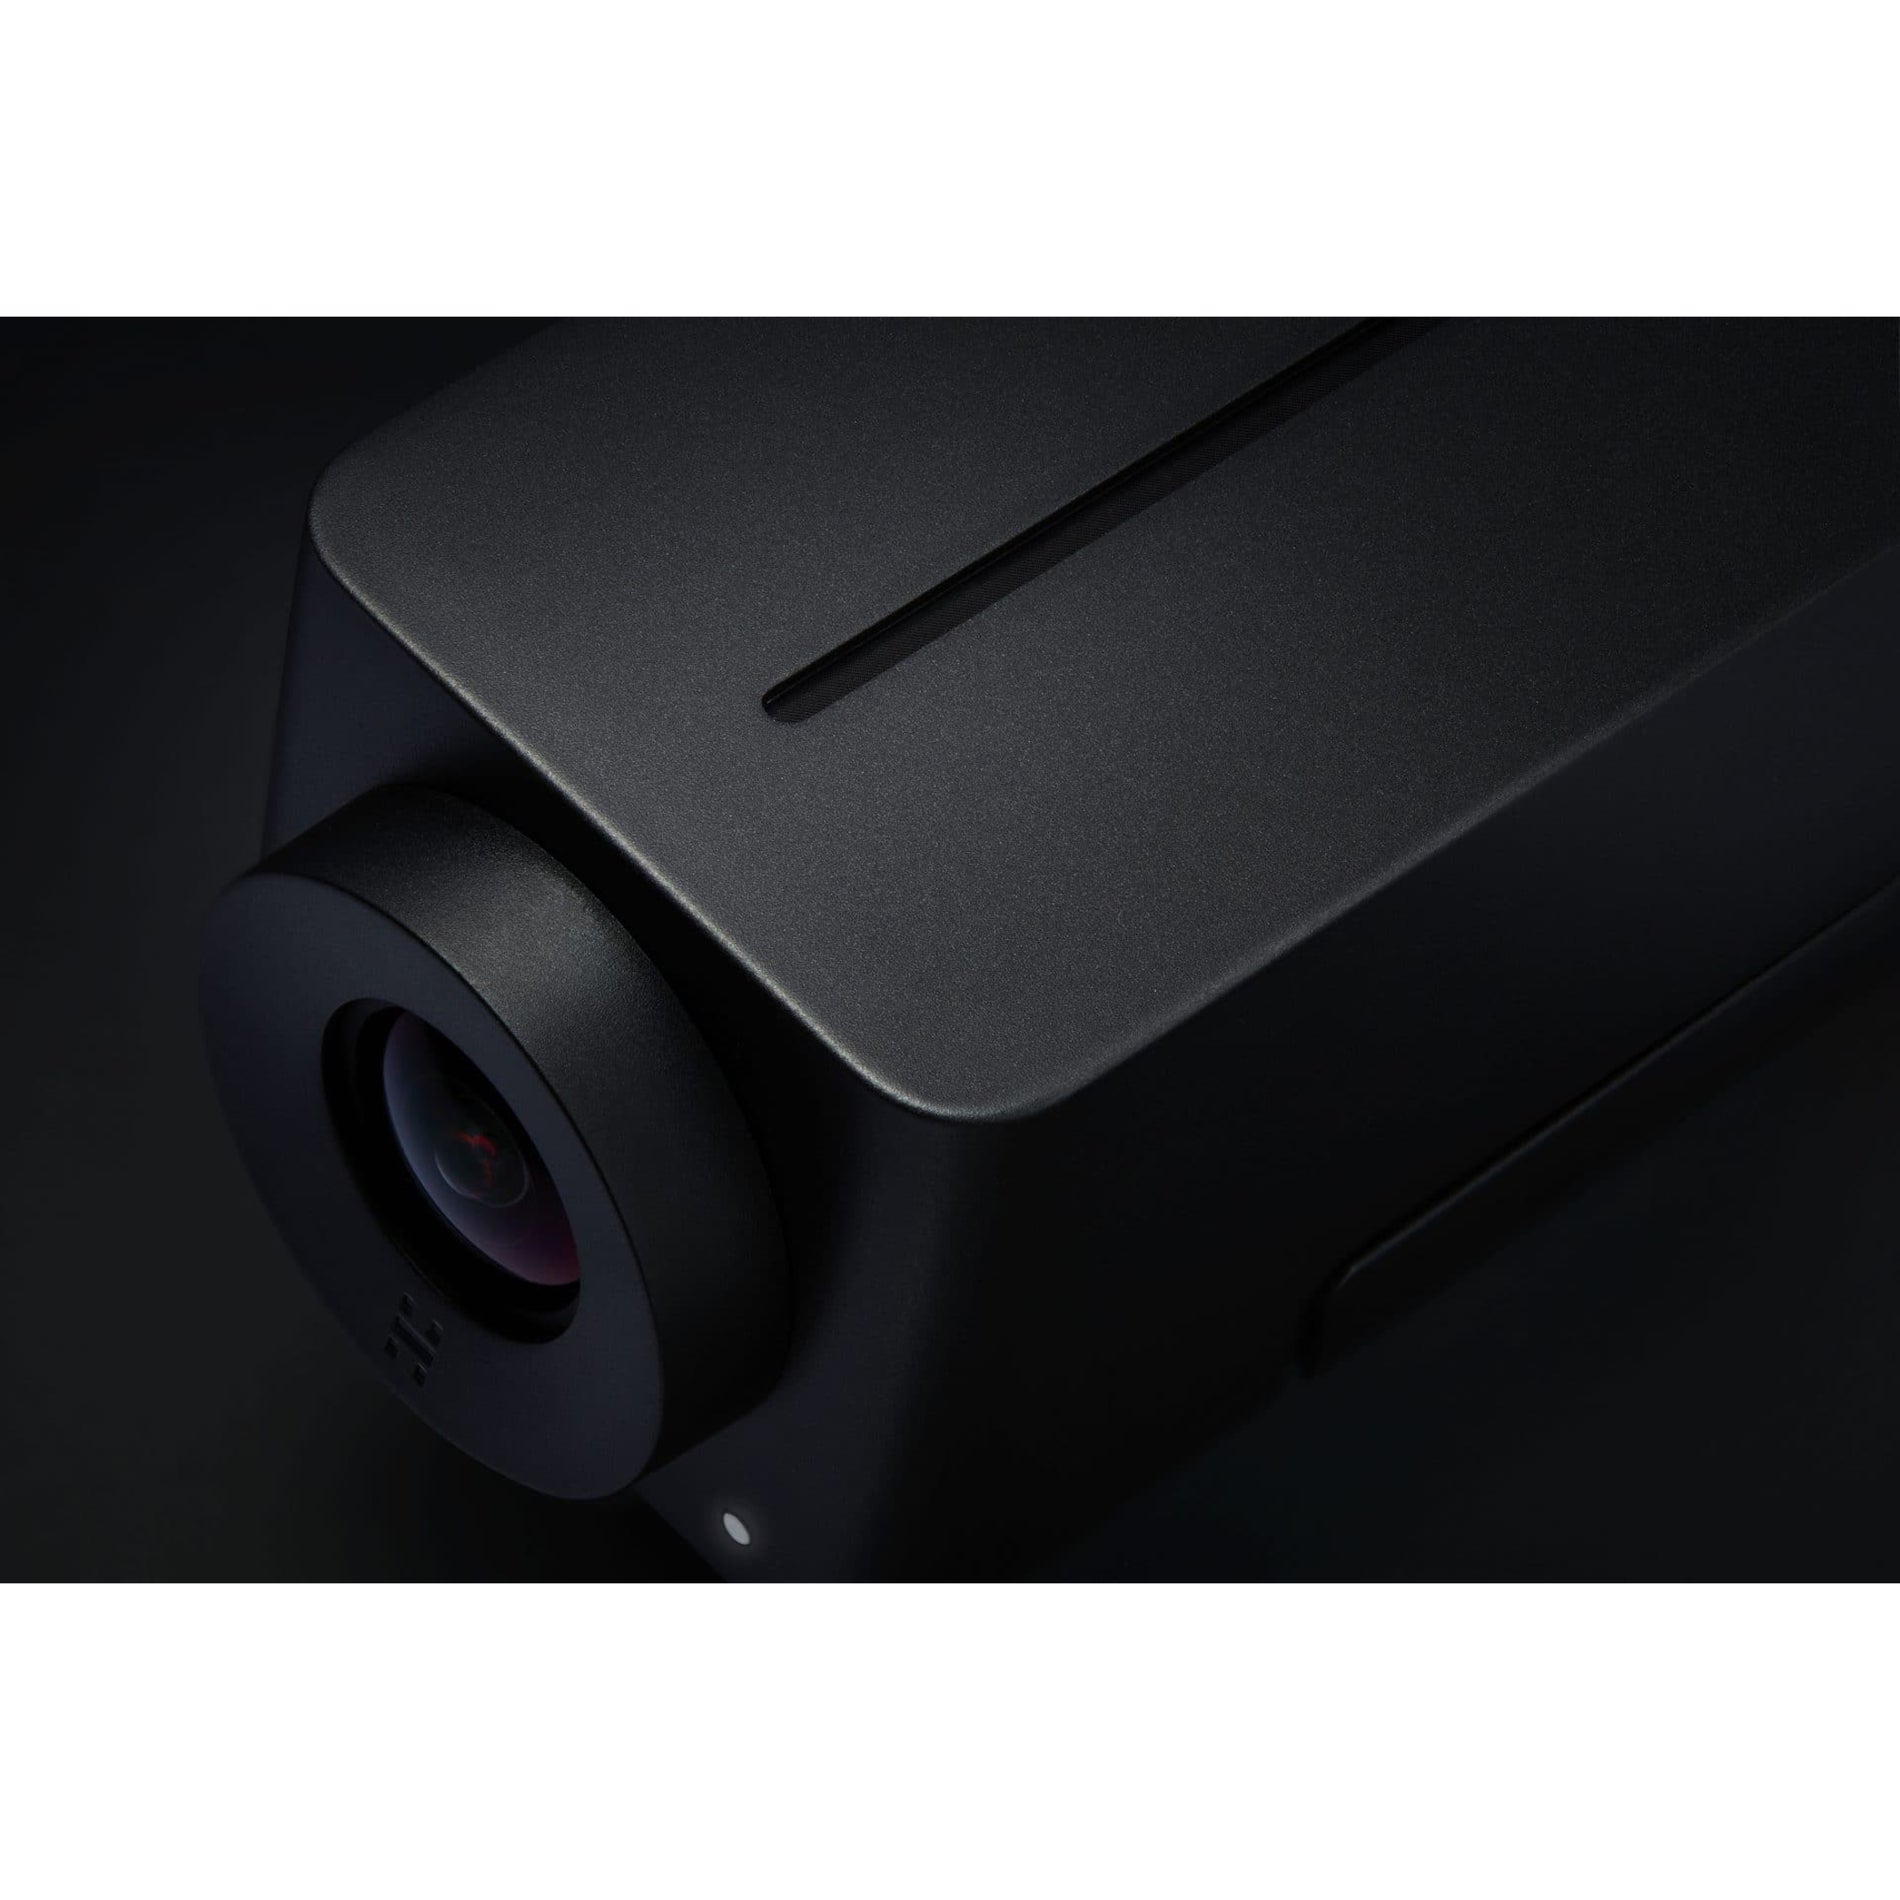 Huddly 7090043790115 IQ Video Conferencing Camera, 12 Megapixel, 30 fps, Matte Black, USB 3.0